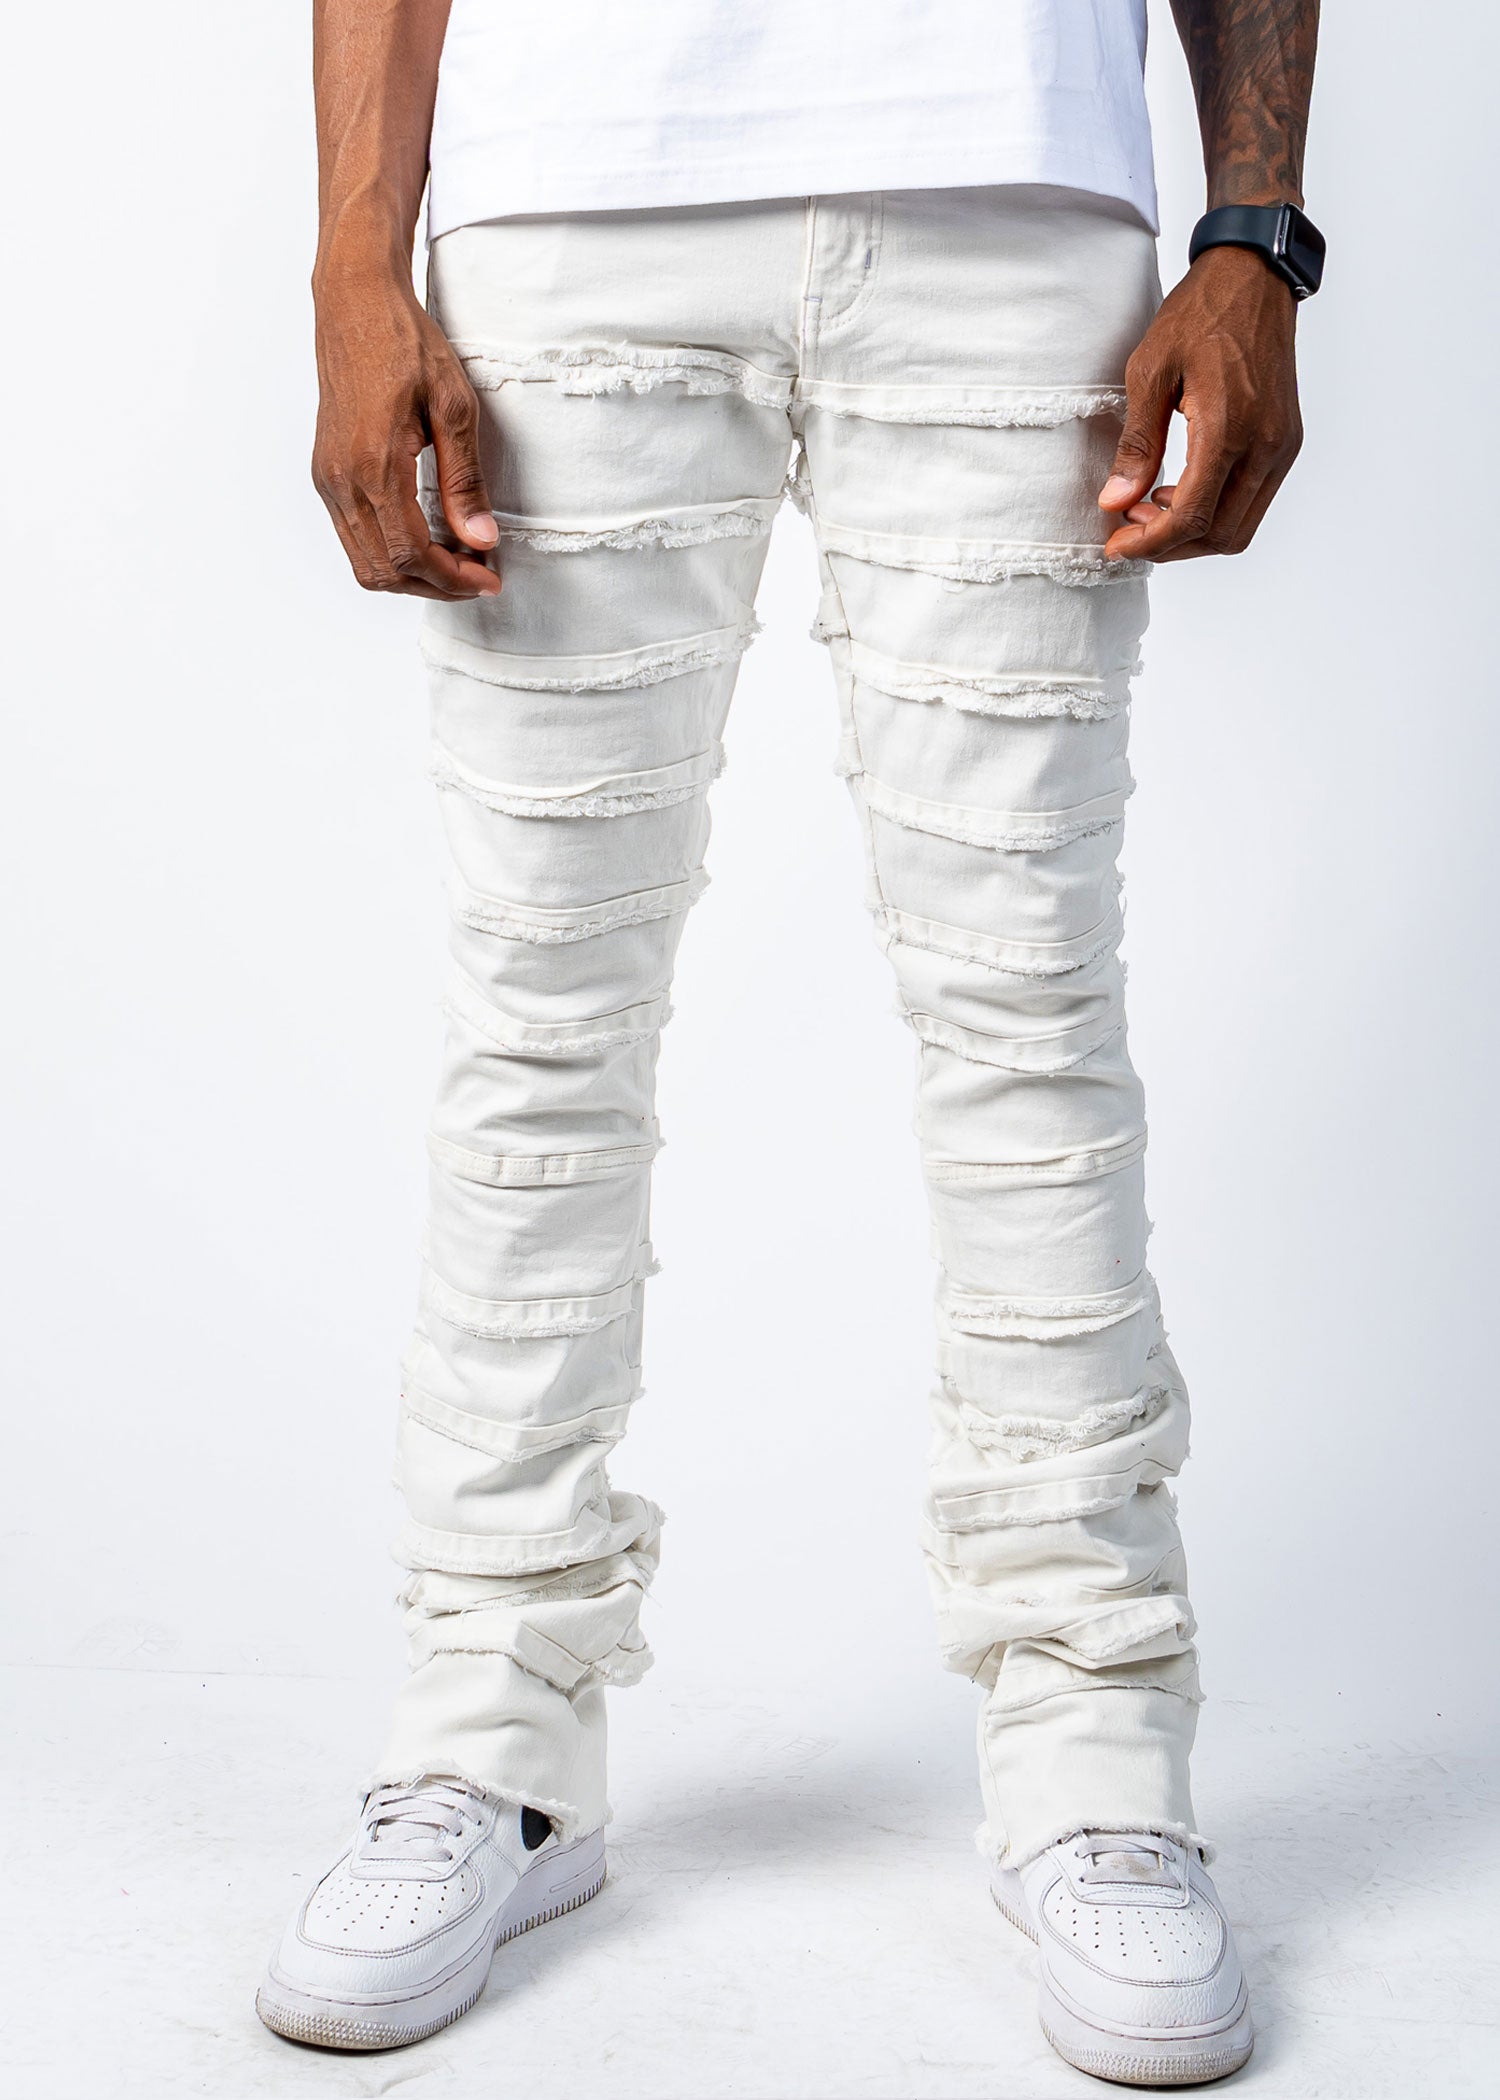 PREME Moto Skinny Stretch Jean - Men's Jeans in White | Buckle